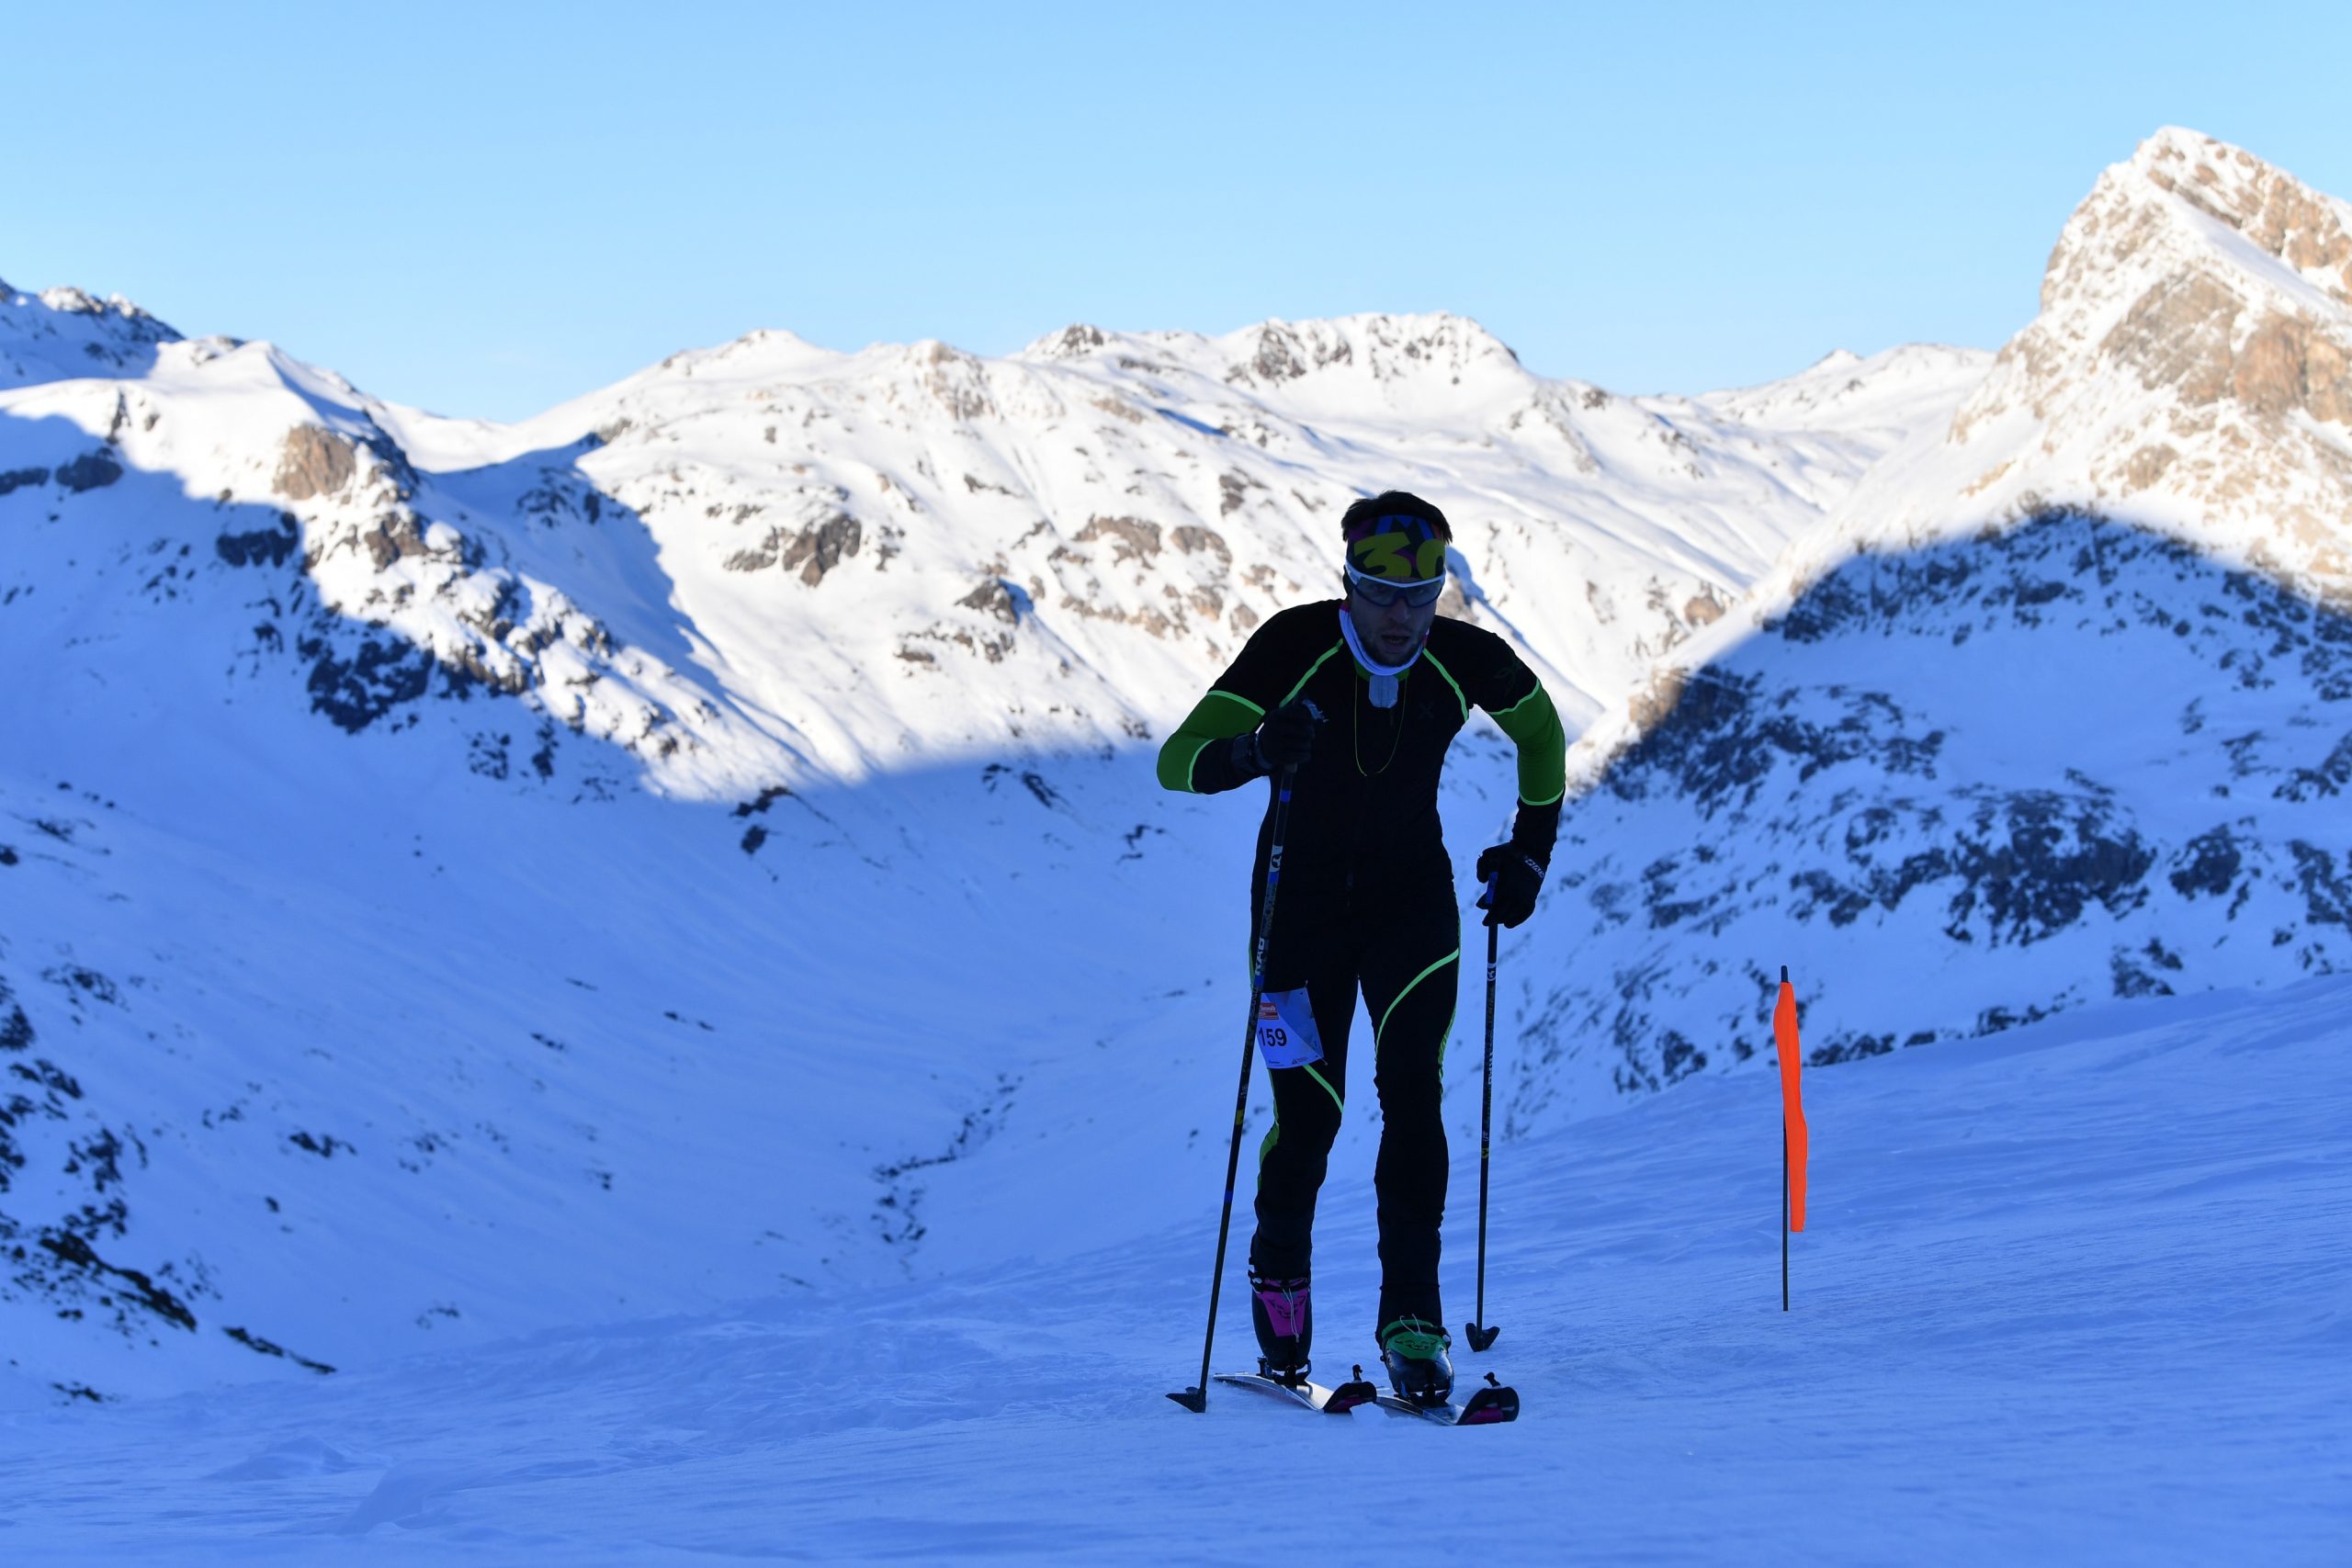 3-Summits - Diavolezza - 2020
Skitourenwettkampf mit Hhenunterschied: 890 hm, Distanz: 4.5 km
https://www.3-summits.ch